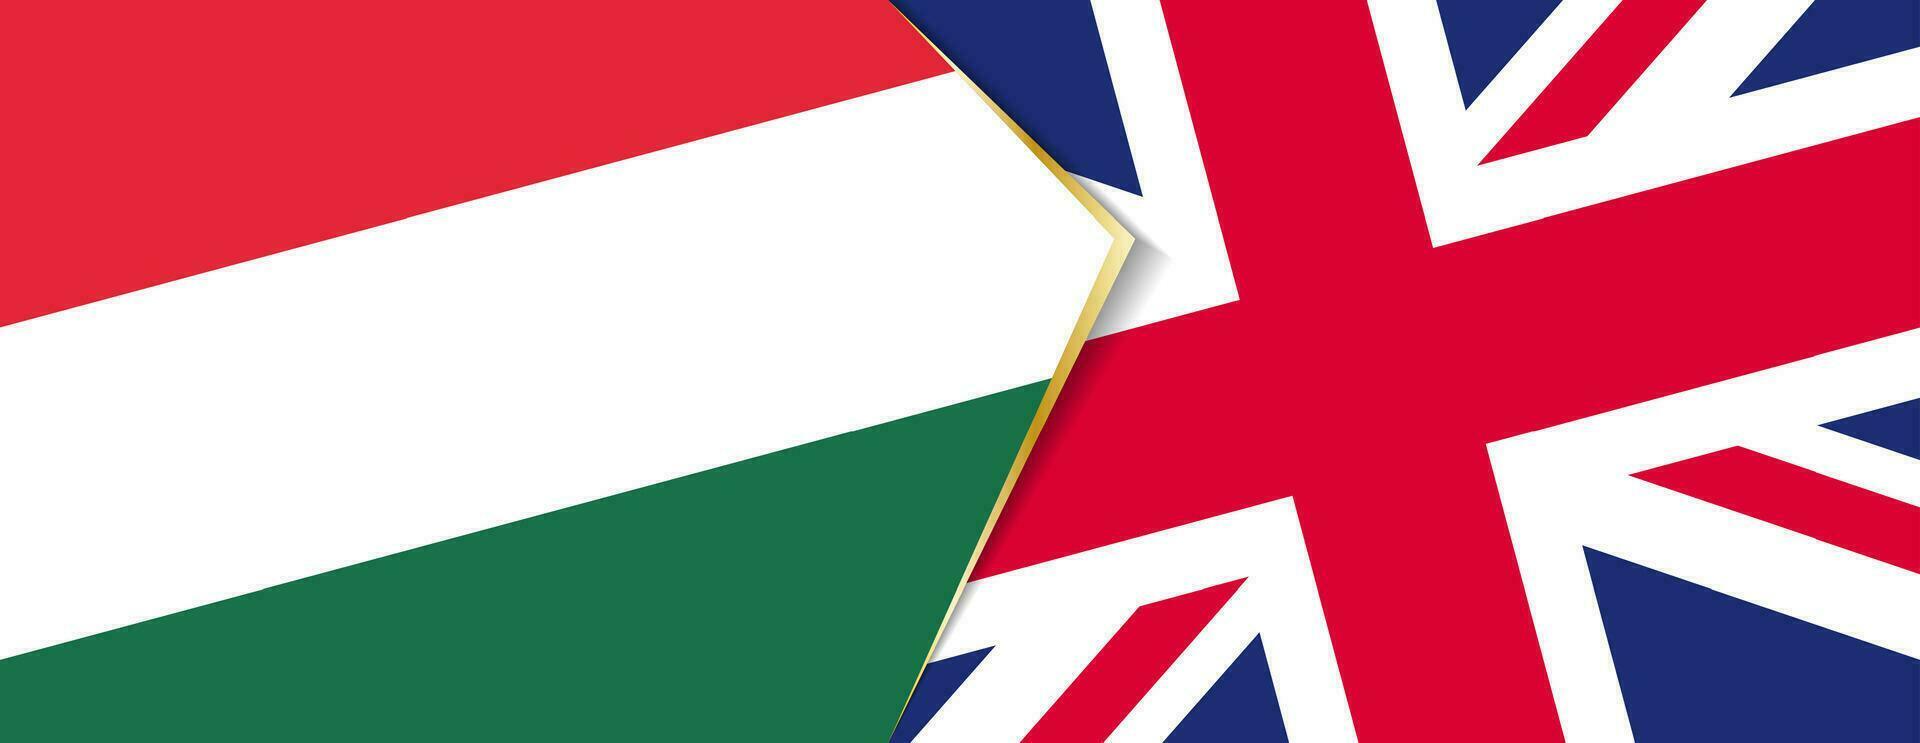 Ungarn und vereinigt Königreich Flaggen, zwei Vektor Flaggen.